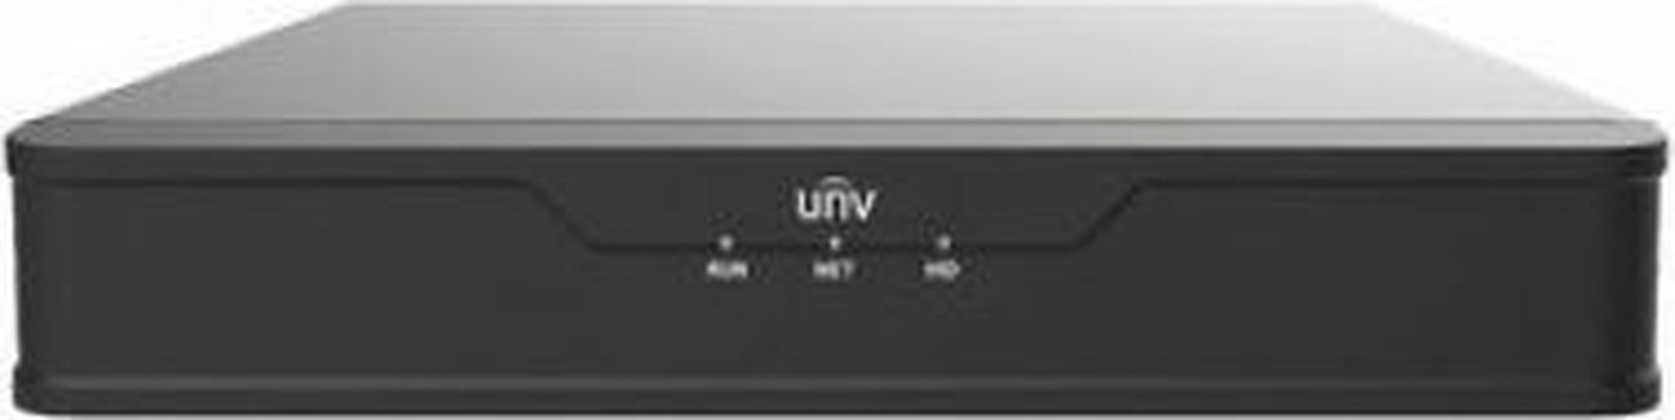 Видеорегистратор 4-канальный "Uniview" [NVR301-04X], 1xHDD, HDMI/VGA, RJ45